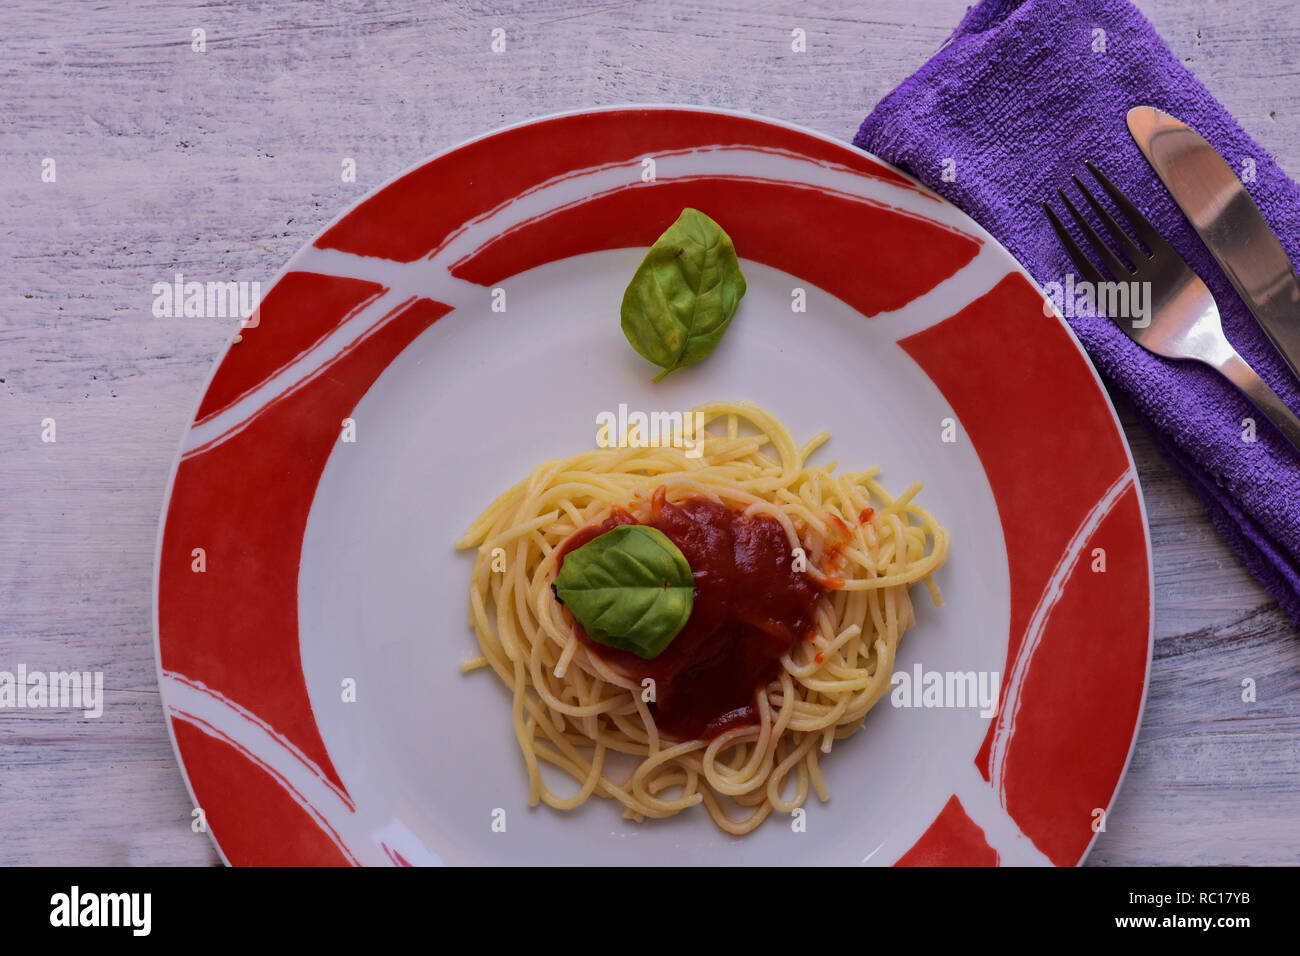 Preparamos un delicioso espaguetis con salsa de tomate-salsa-servido en placa en madera ligera - Imagen de fondo Foto de stock